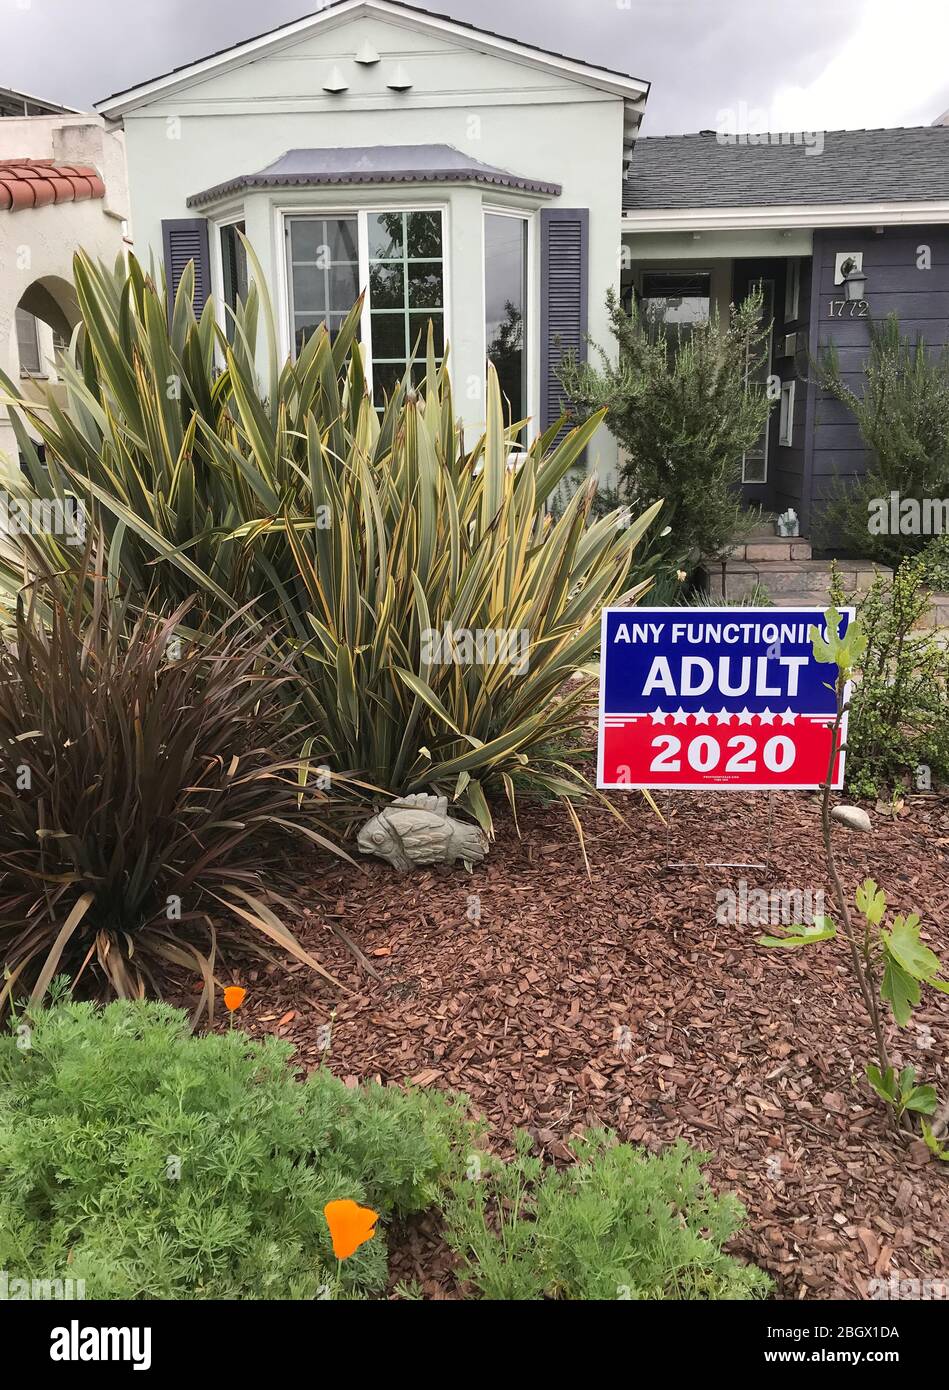 Un signe politique humoristique devant le foyer offrant un soutien à "tout adulte en état de marche" aux élections de 2020 aux États-Unis. Banque D'Images